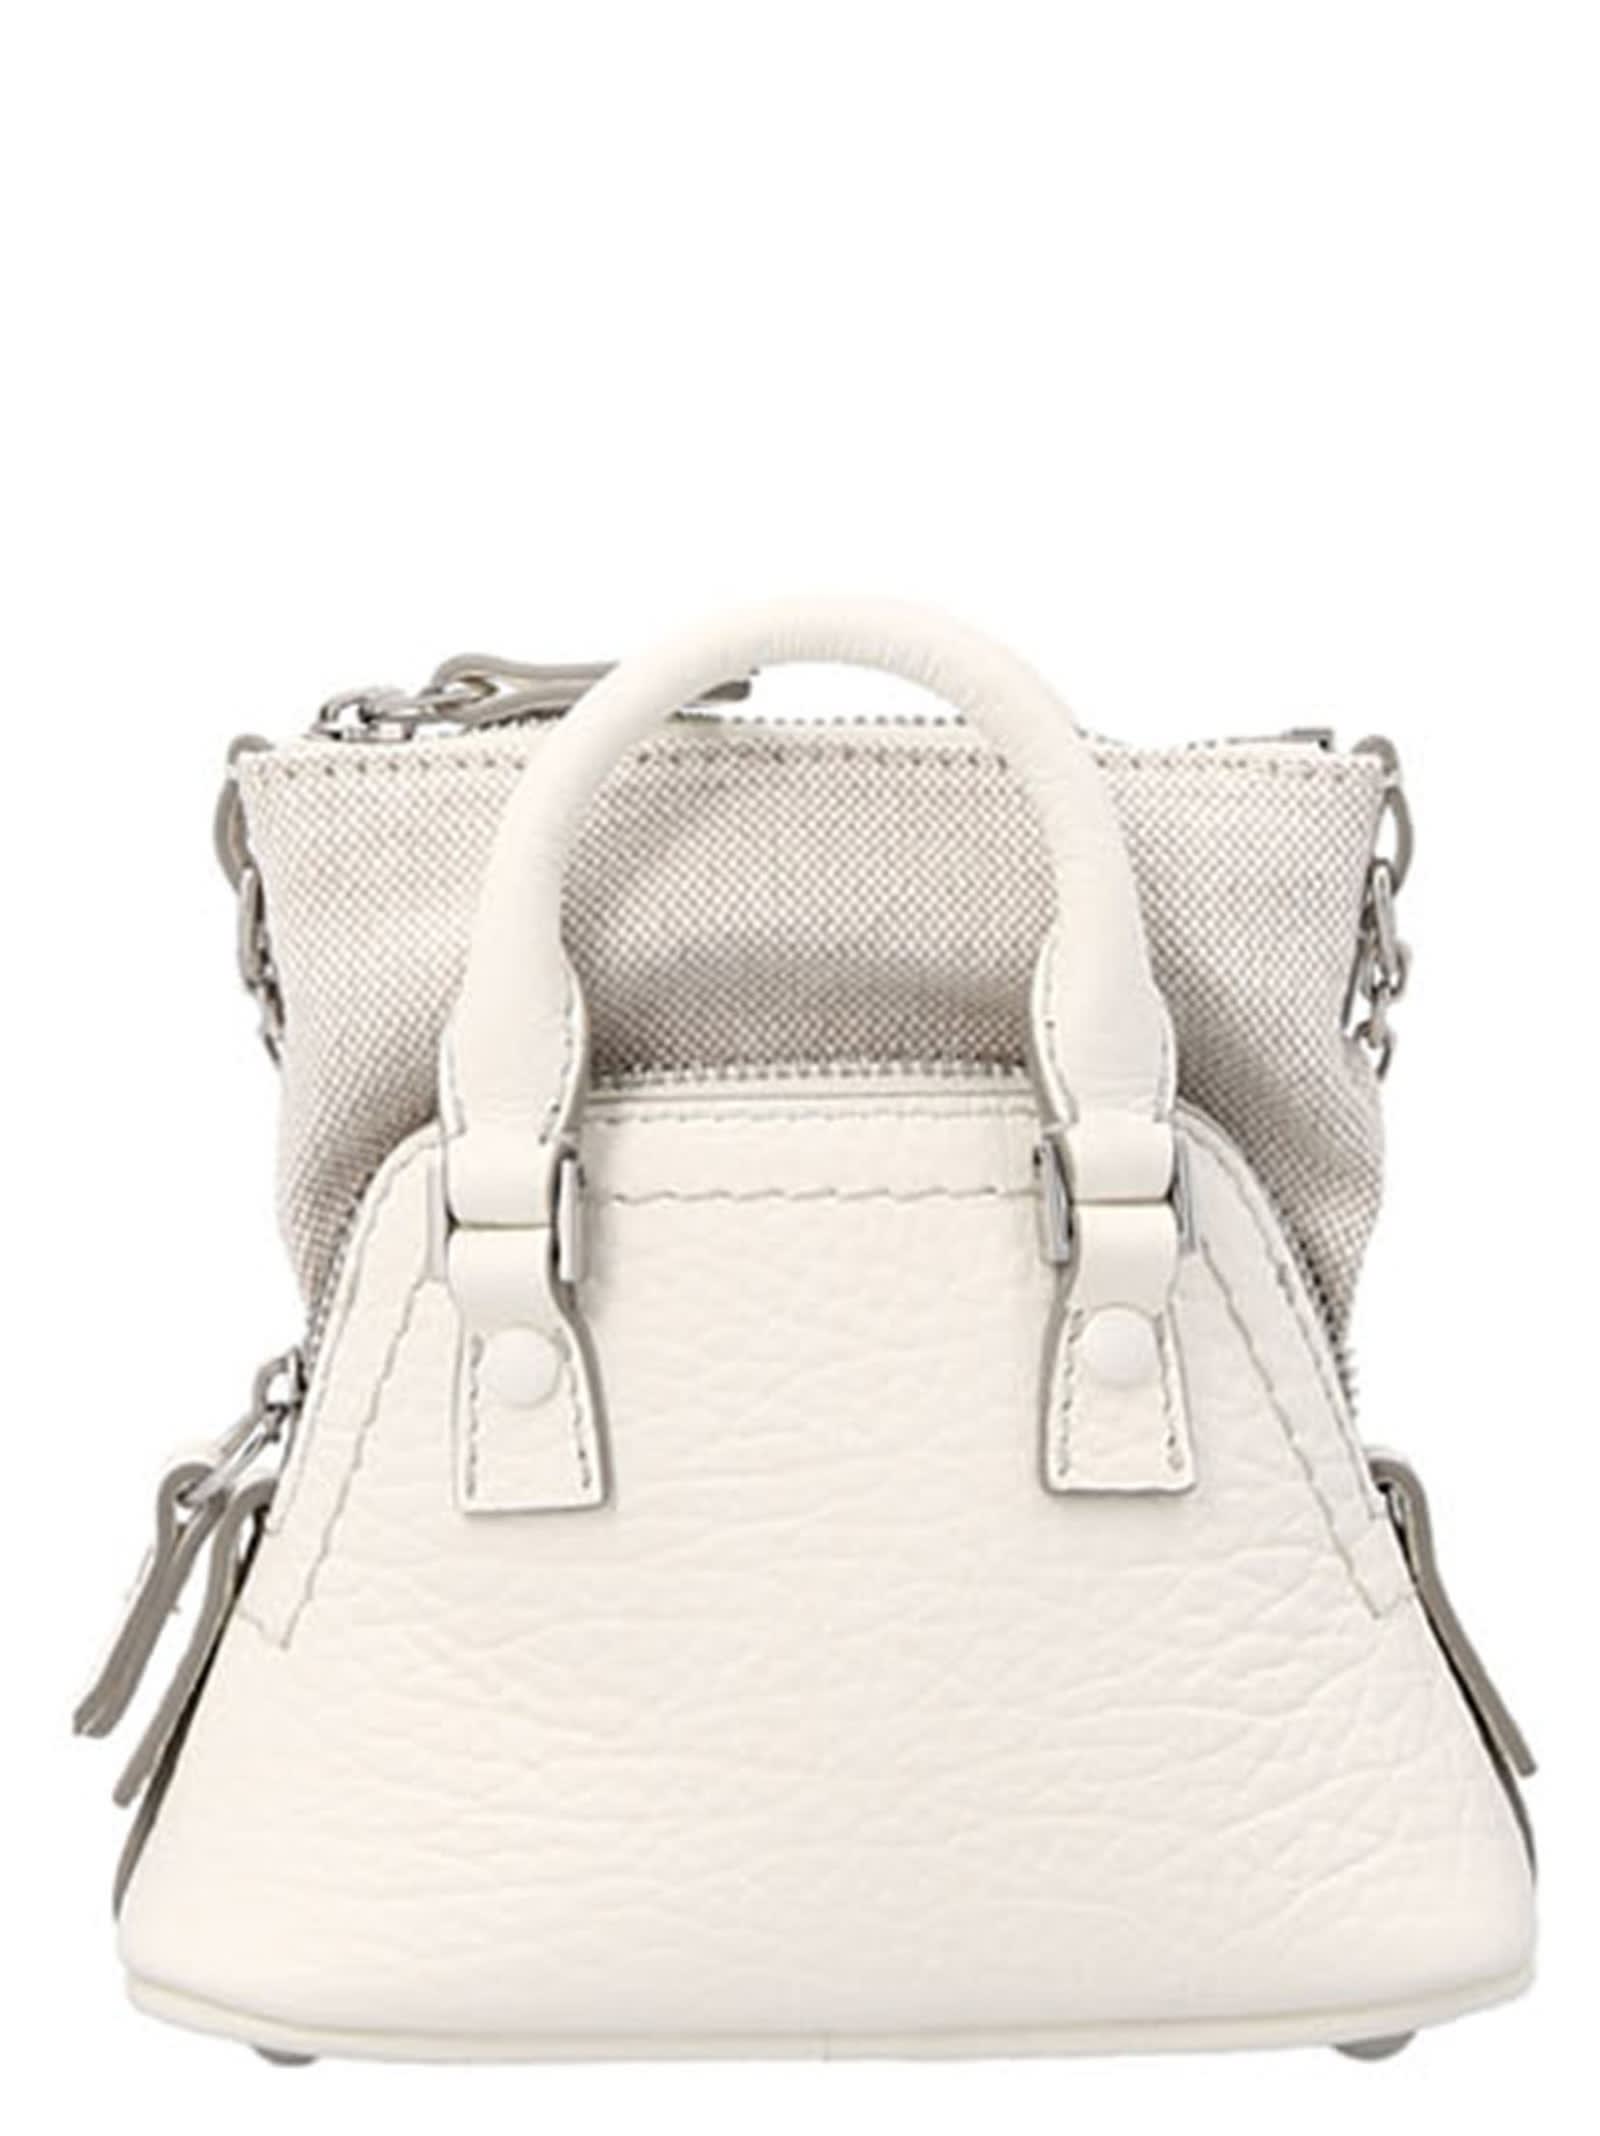 Shop Maison Margiela 5ac Classique Baby Shoulder Bag In White